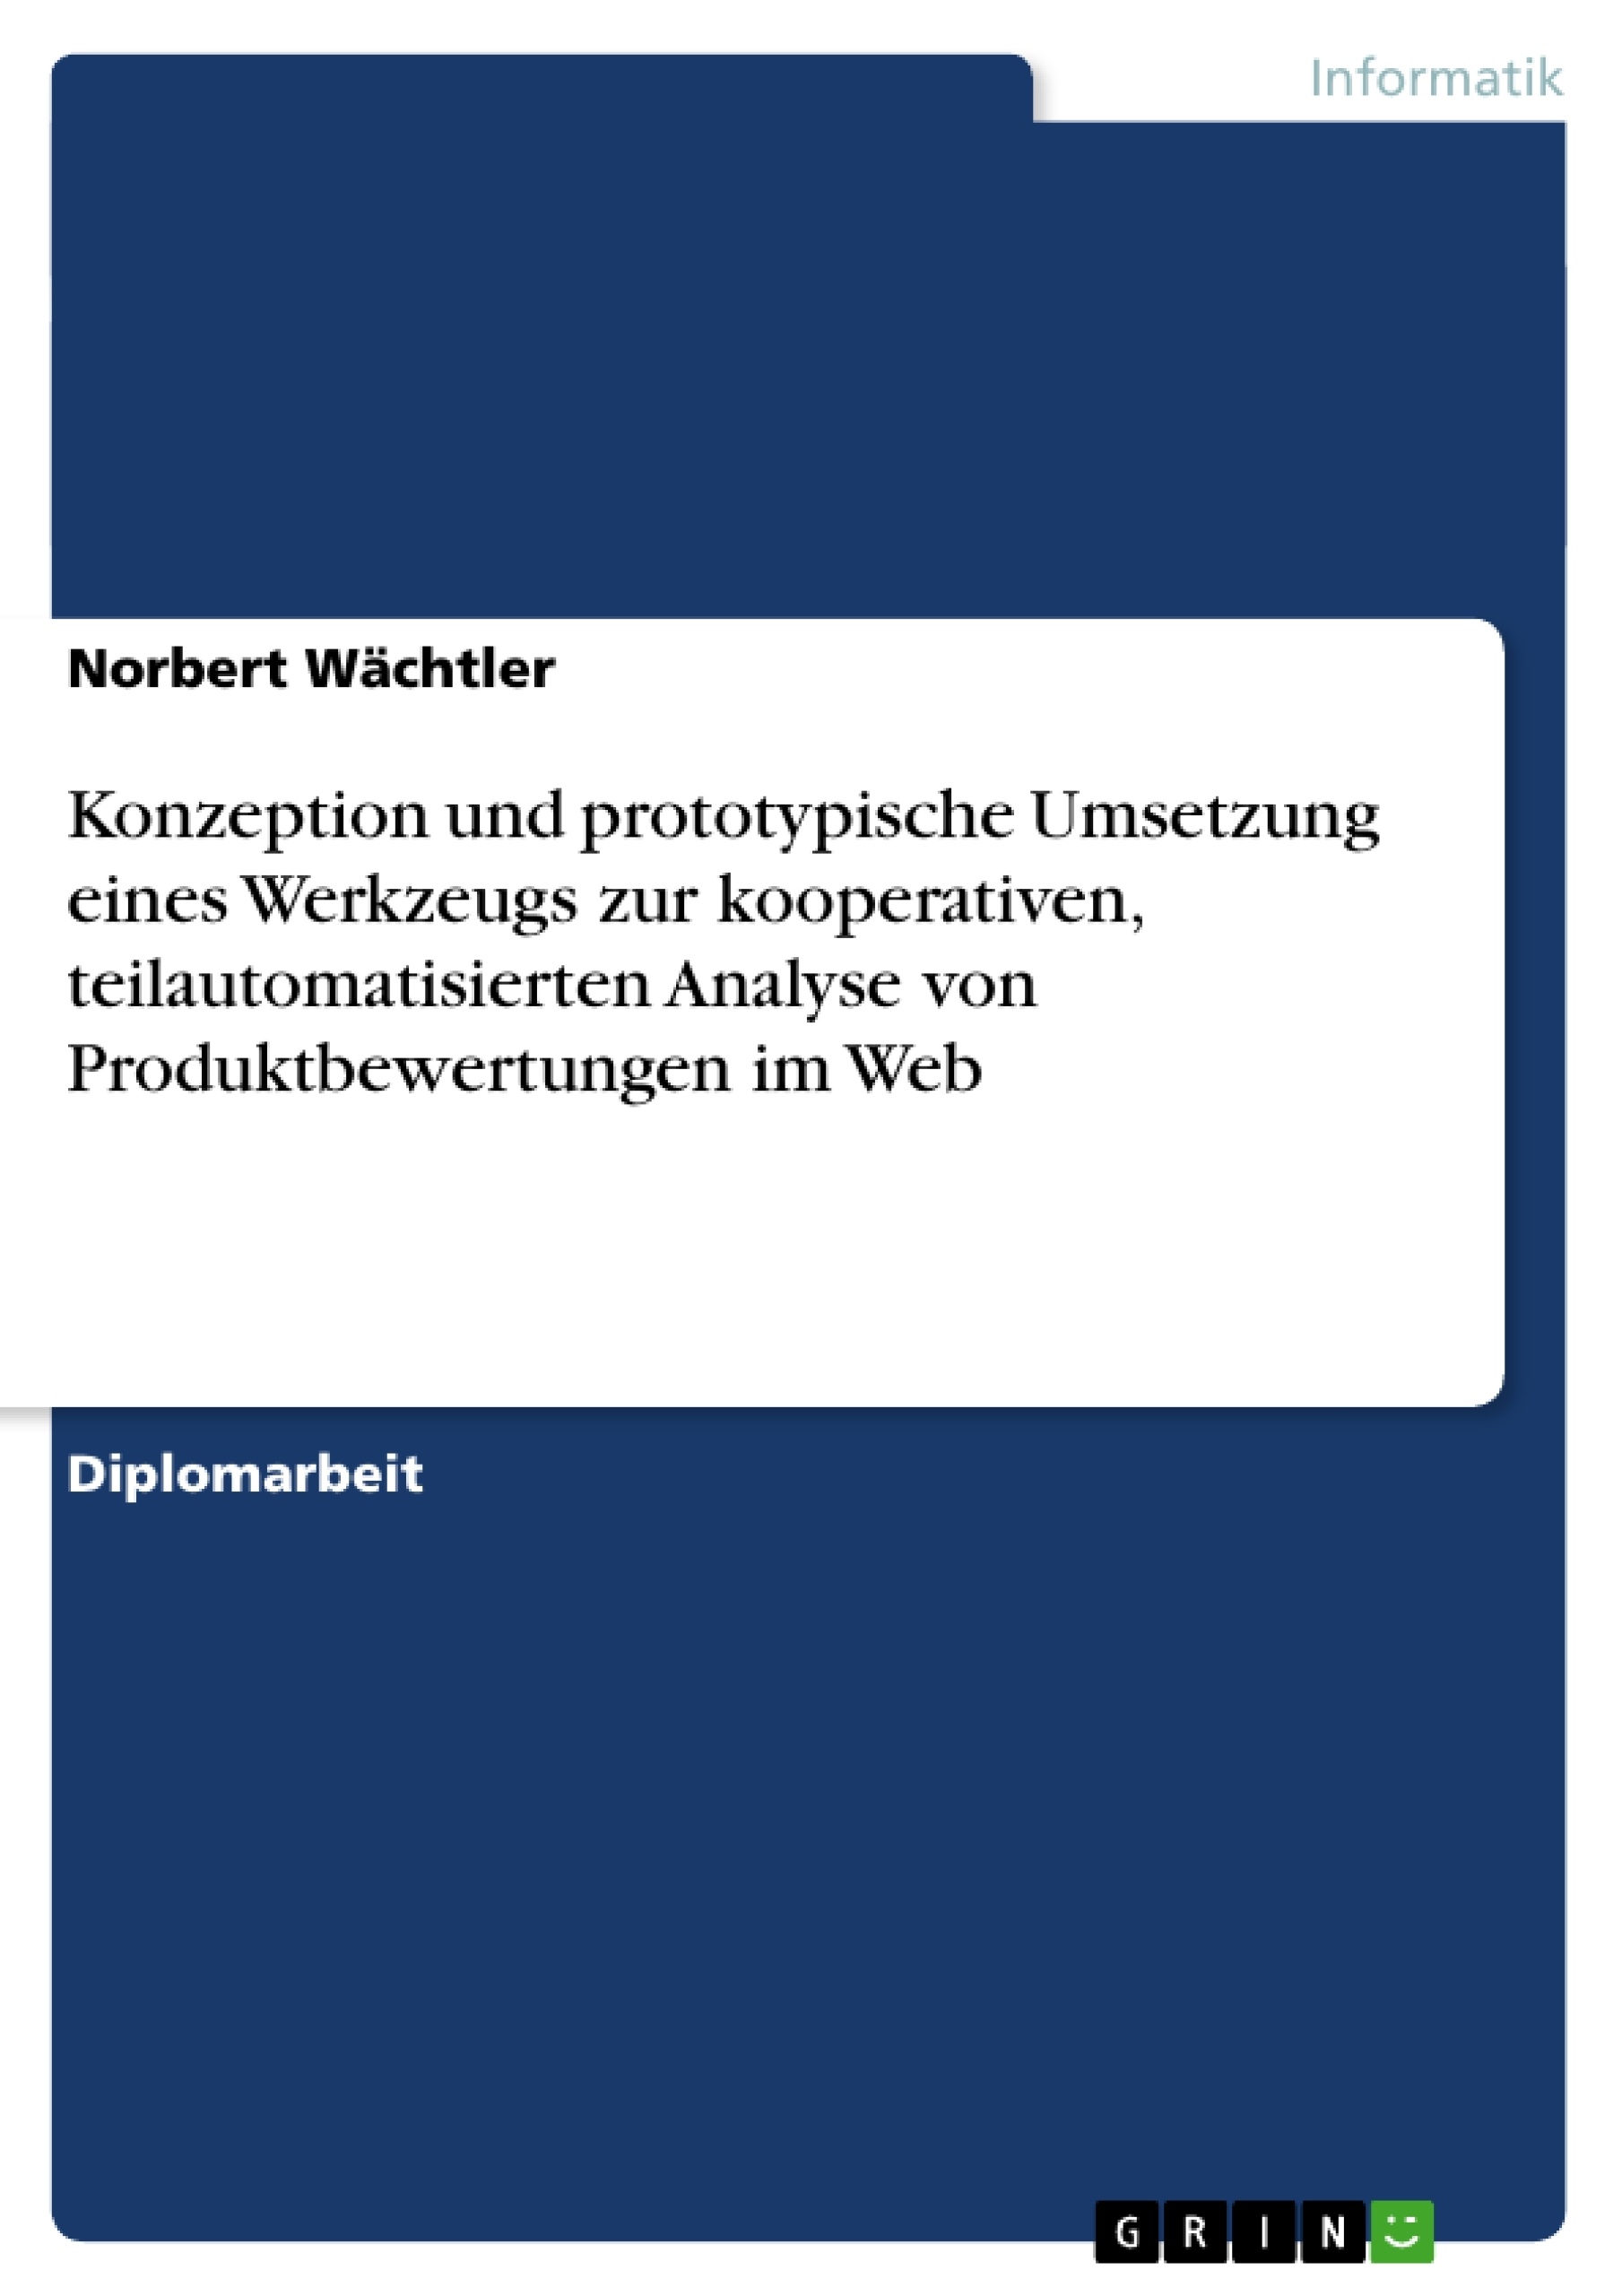 Title: Konzeption und prototypische Umsetzung eines Werkzeugs zur kooperativen, teilautomatisierten Analyse von Produktbewertungen im Web